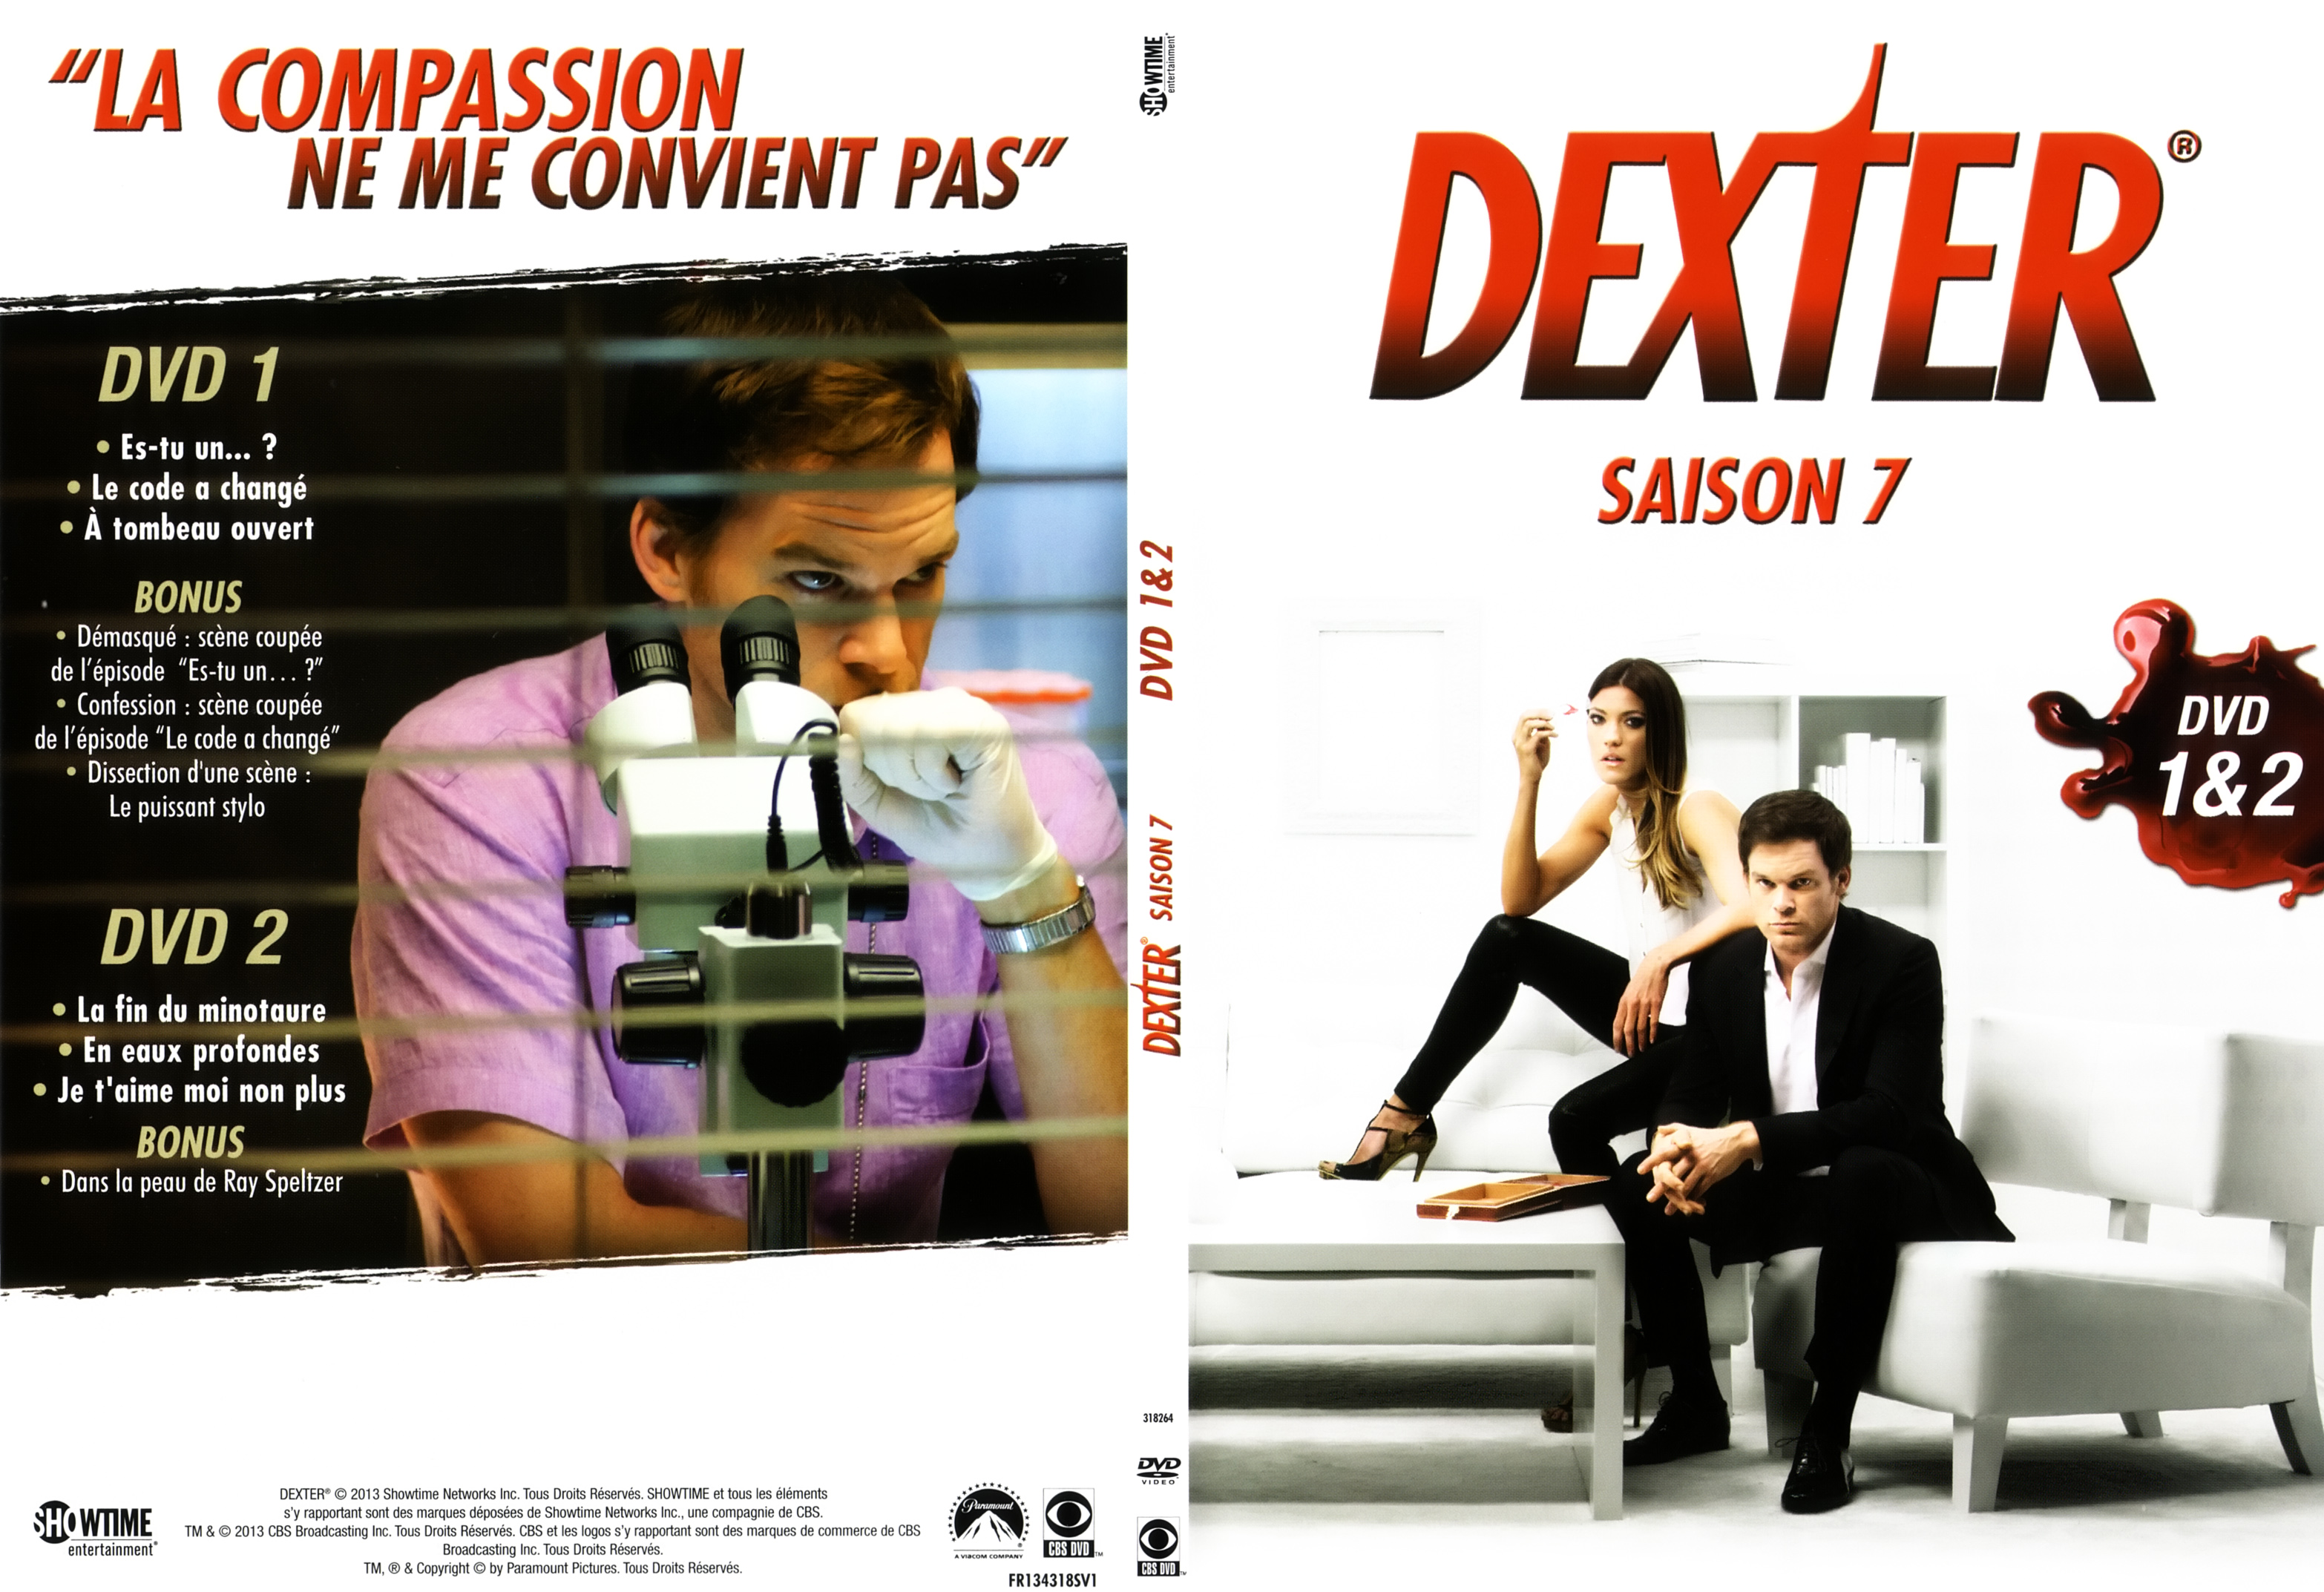 Jaquette DVD Dexter saison 7 DVD 1